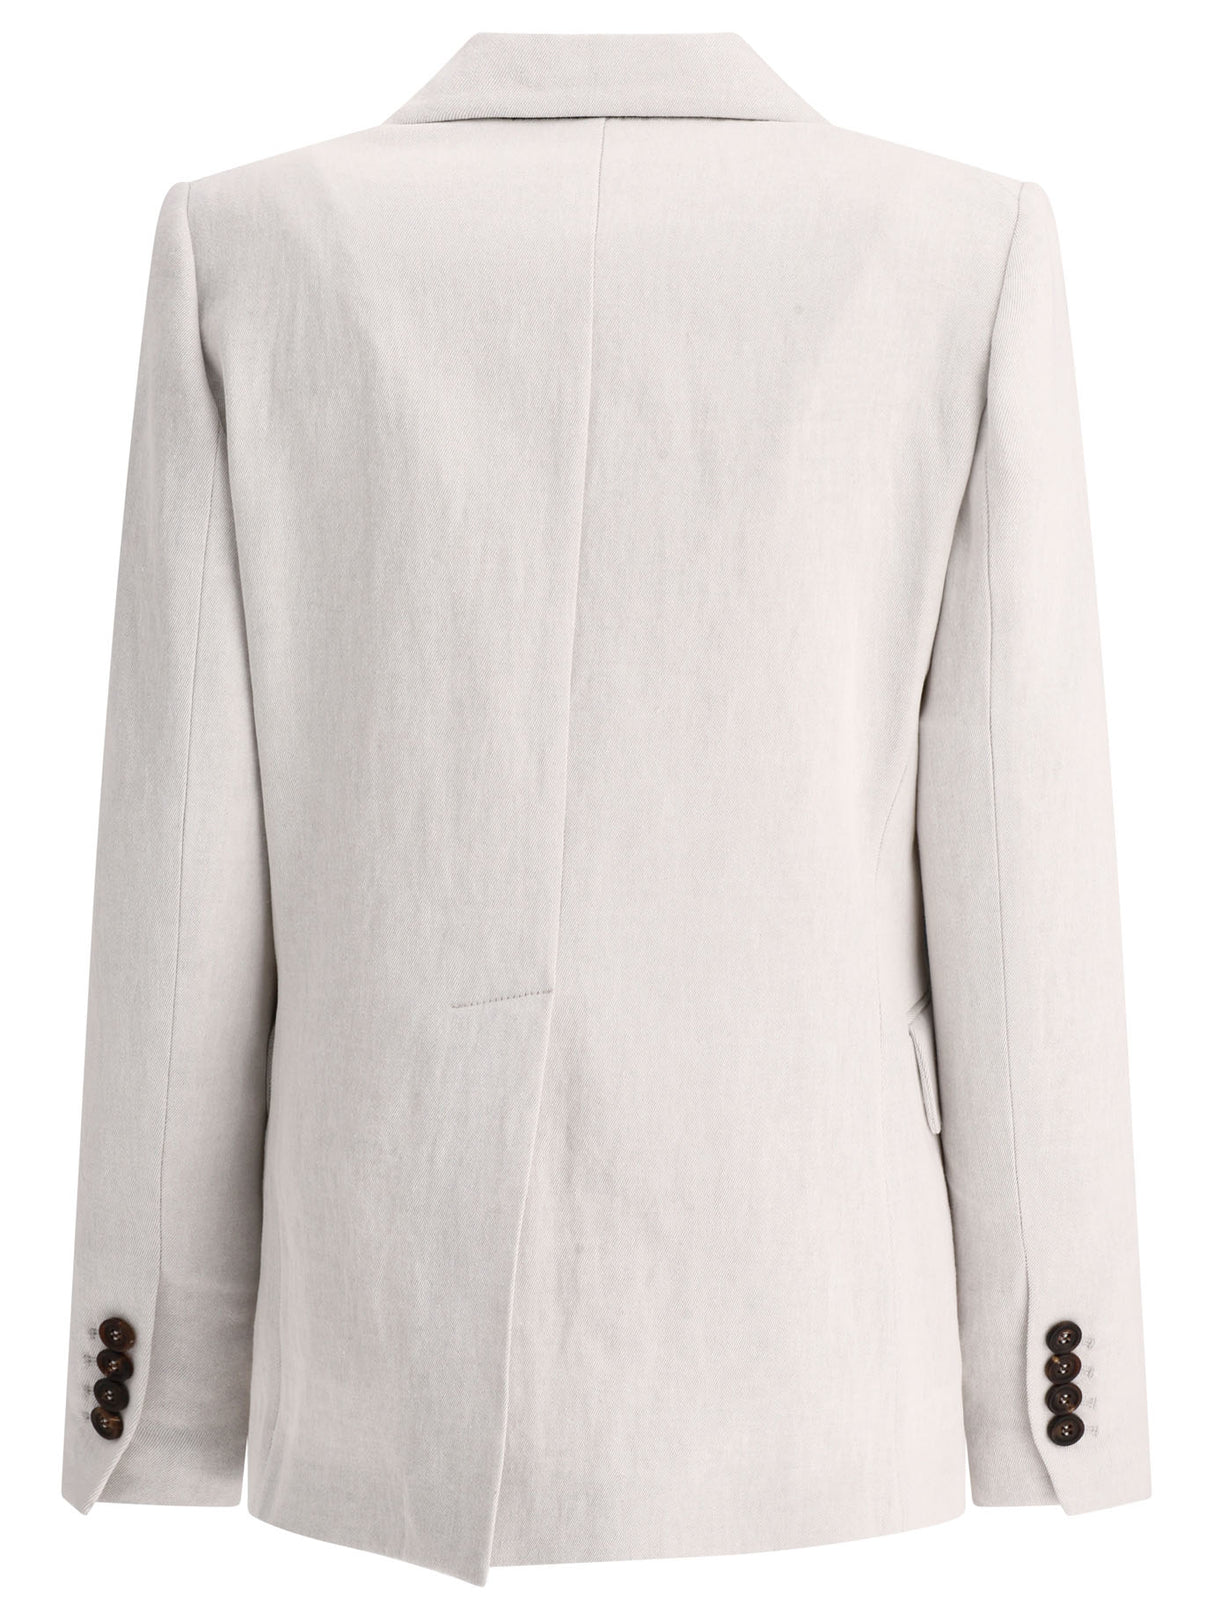 Áo khoác nữ Cotton-Linen Grey với tuyến cổ phối ren và viền rãnh giữa